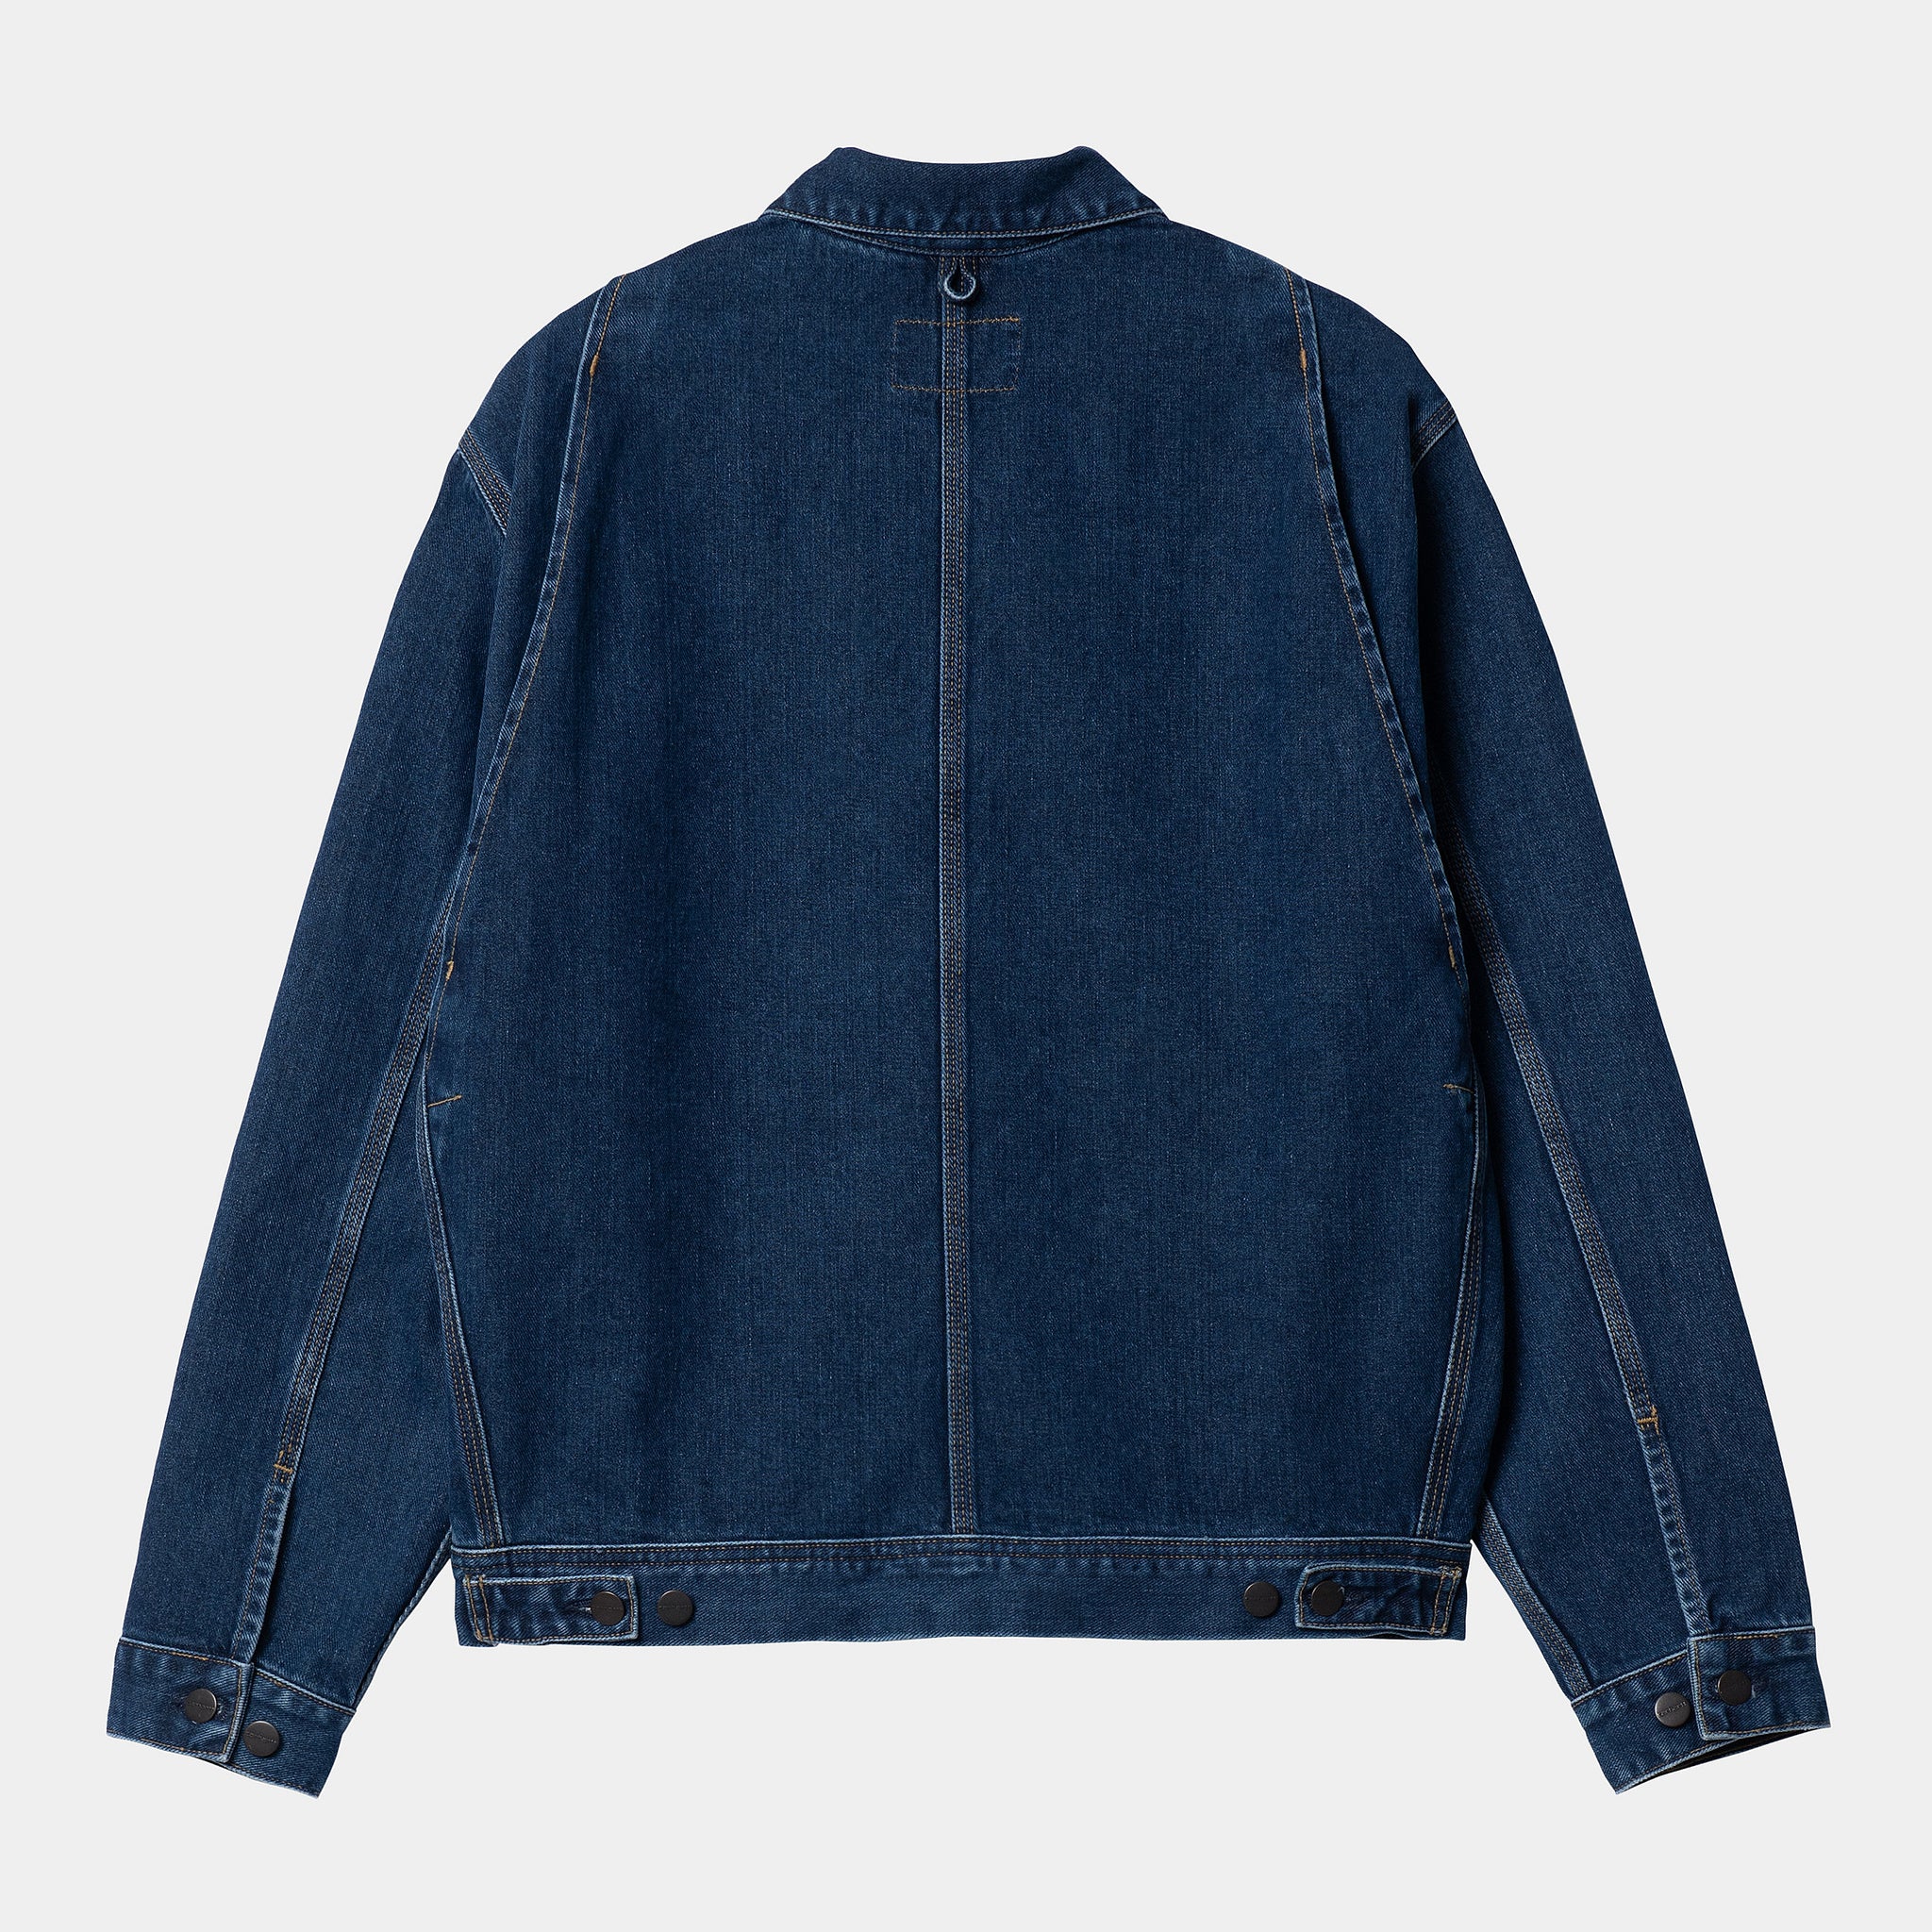 Saledo Jacket Organic Cotton Maitland Denim, 13.5 Oz (Blue Stone Washed)